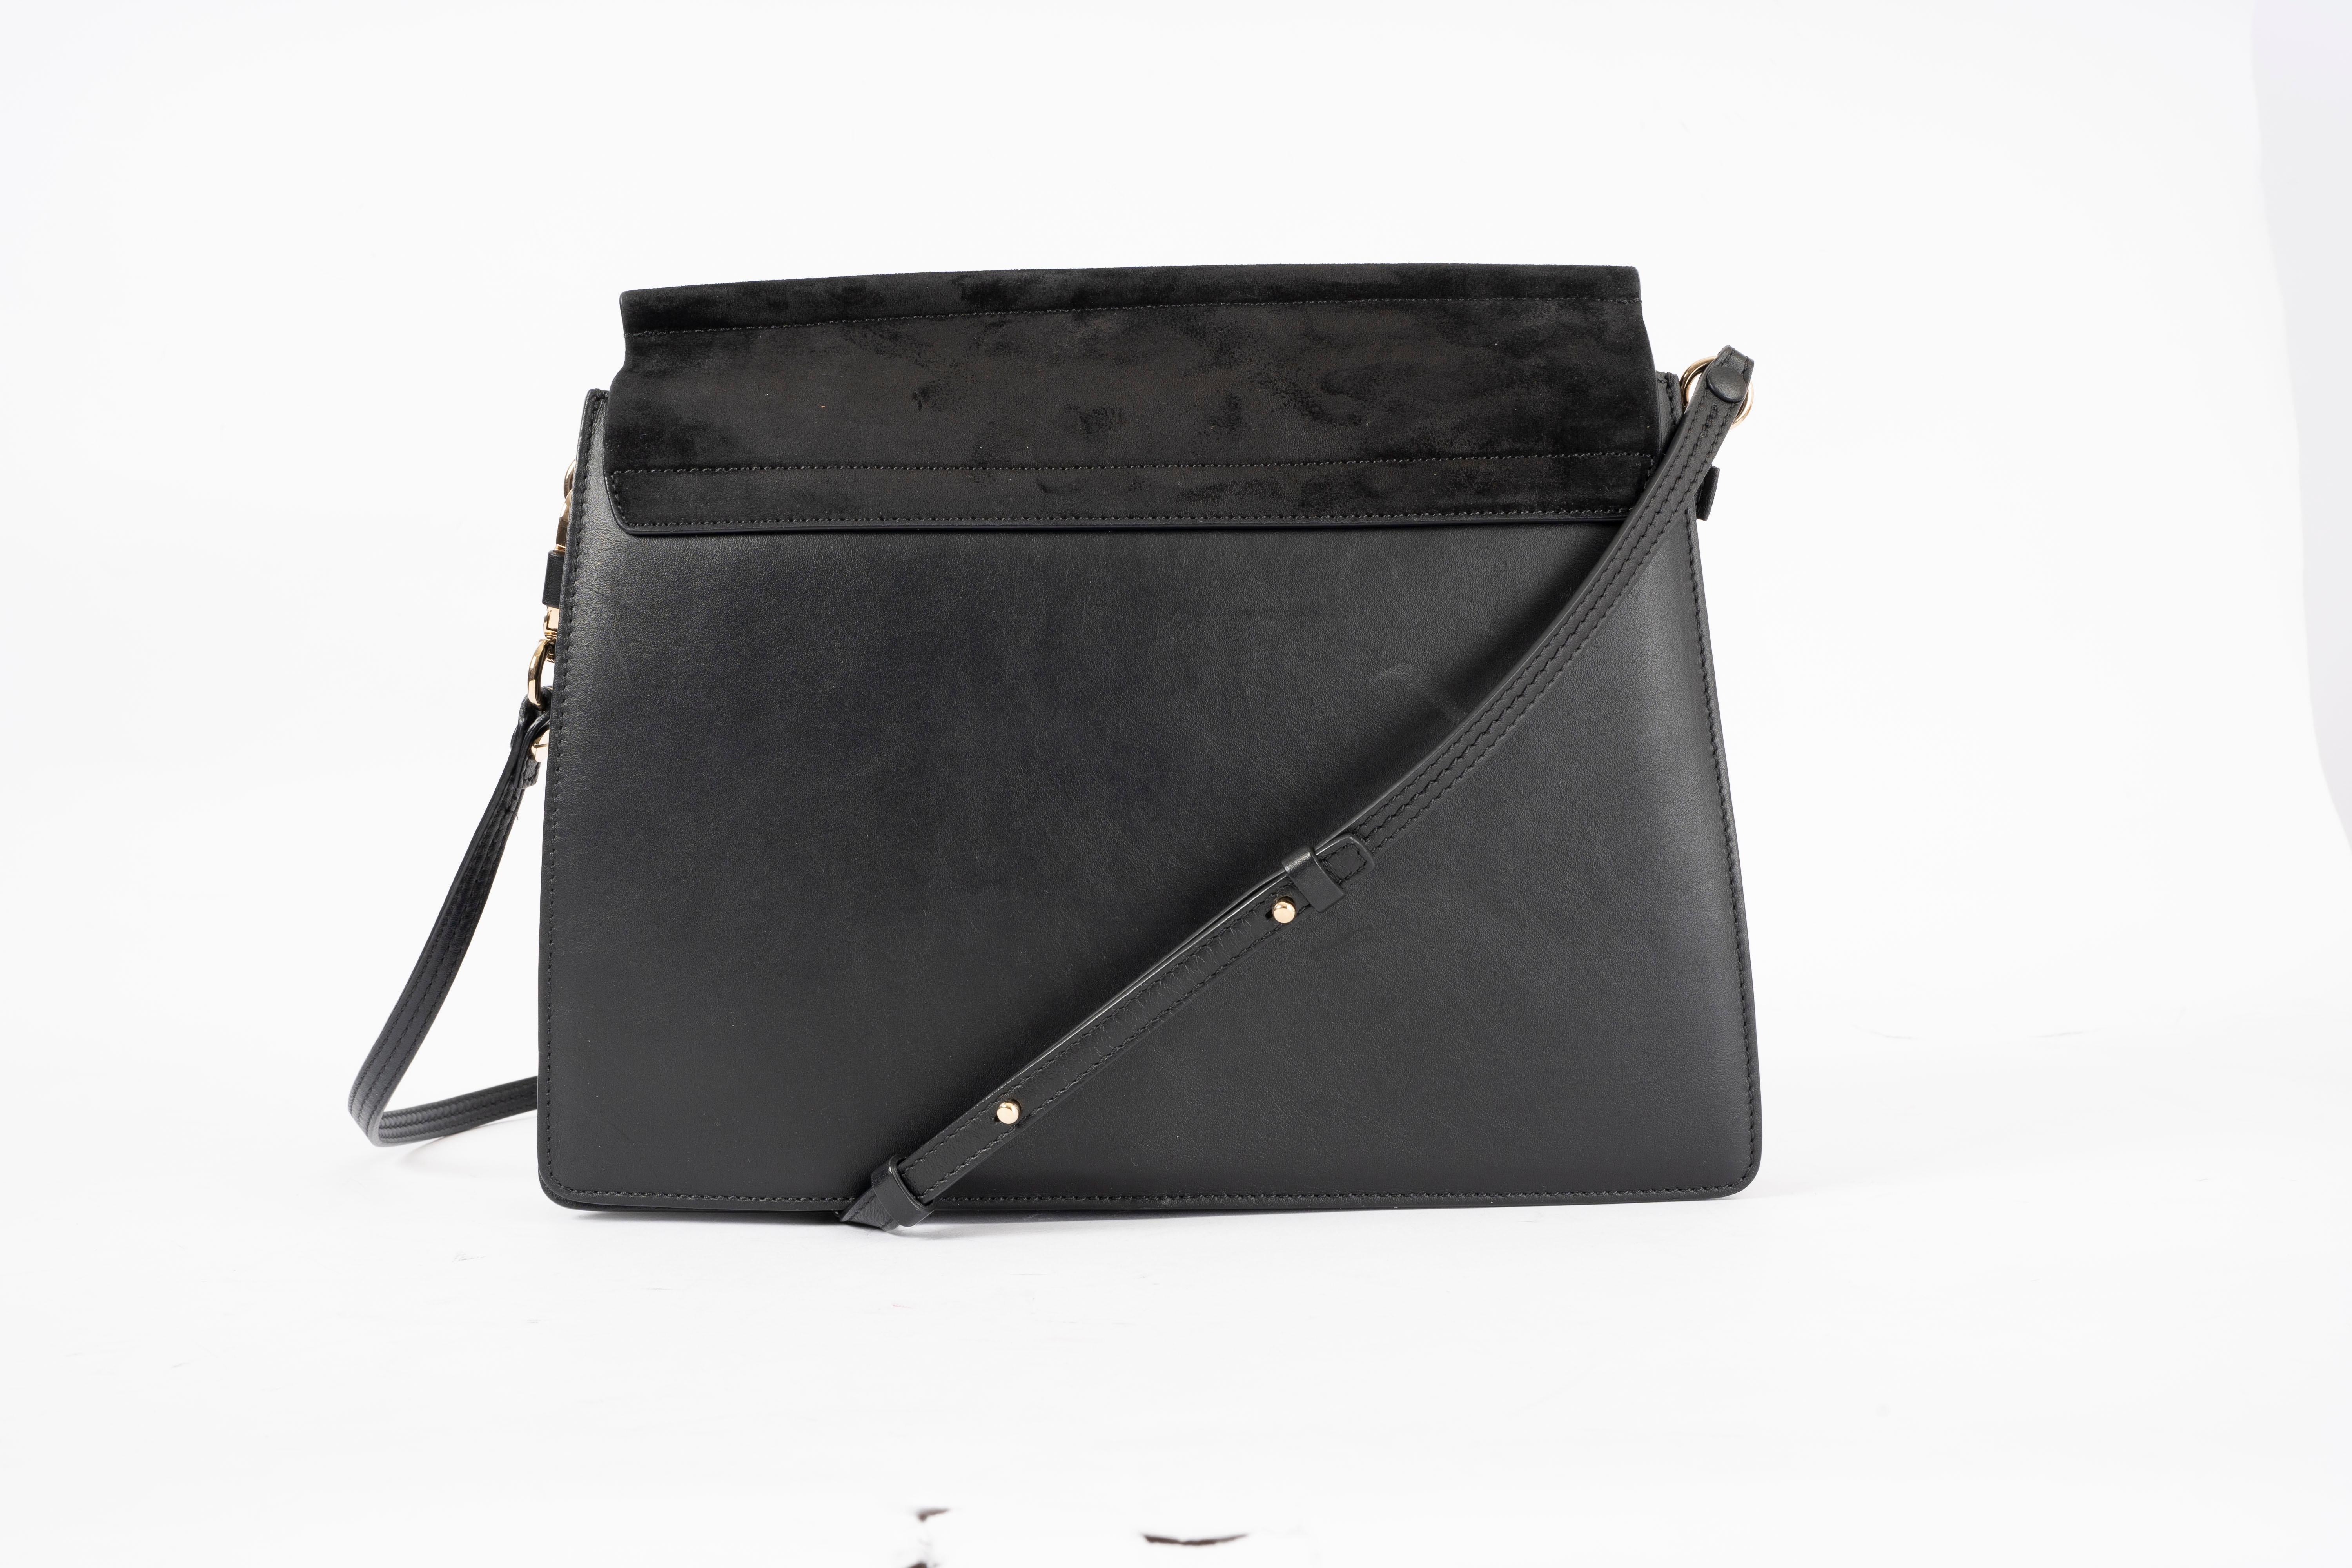 Black CHLOE black leather & suede FAYE MEDIUM Shoulder Bag